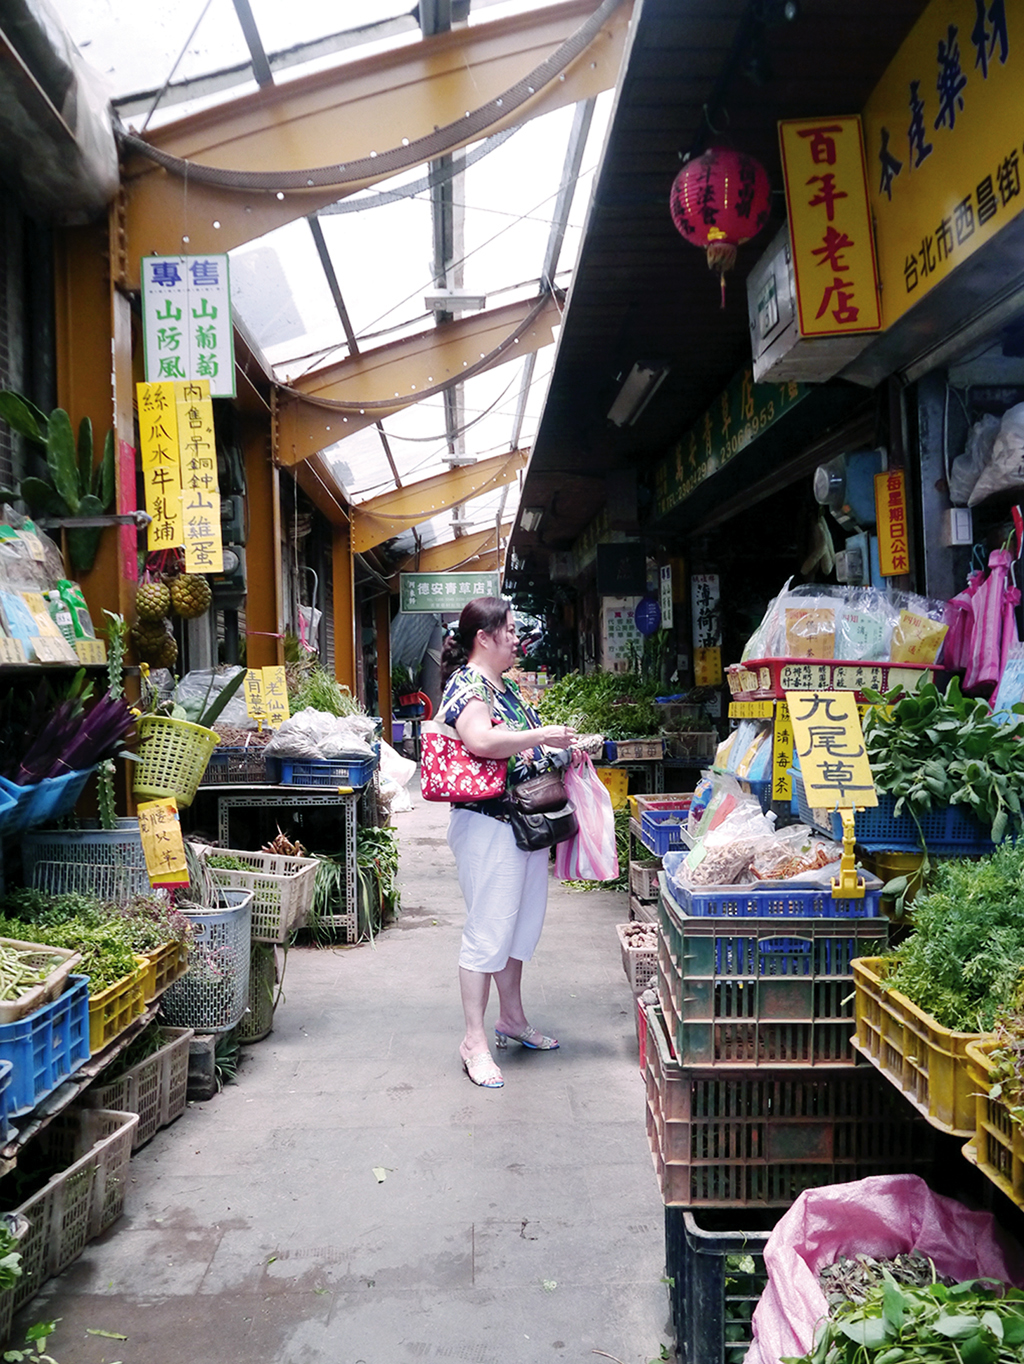 萬華製造,wanhua,青草振興,萬華青草,herb,Taipei,青草茶,herb alley,青草巷